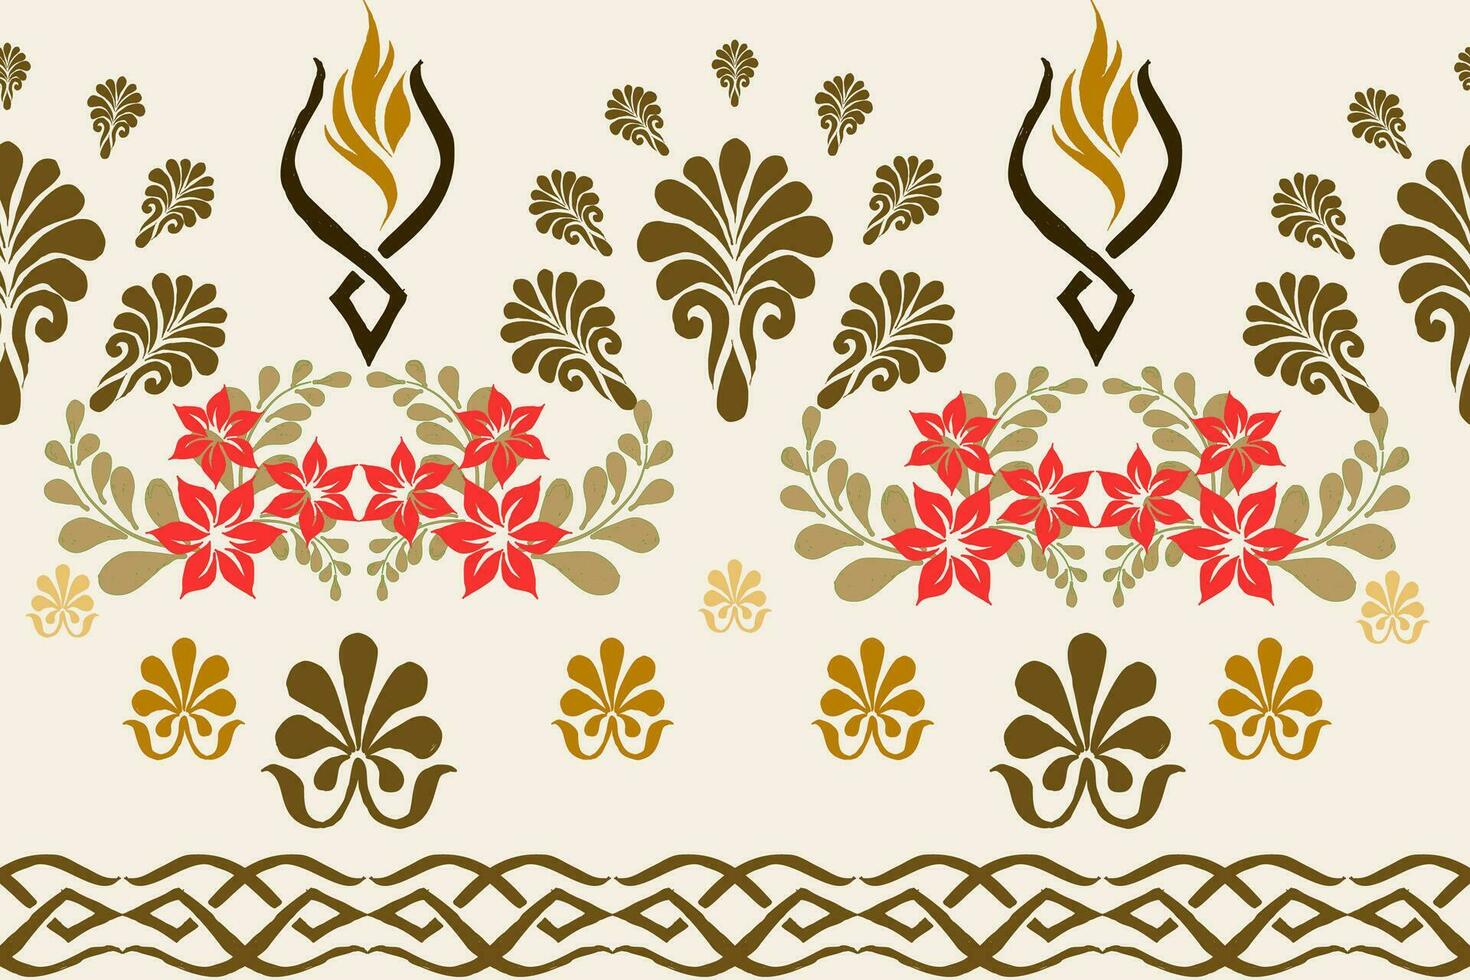 bloemen kruis steek borduurwerk Aan wit achtergrond.geometrisch etnisch oosters naadloos patroon traditioneel.azteken stijl abstract vector illustratie.ontwerp voor textuur, stof, kleding, verpakking, sarong.